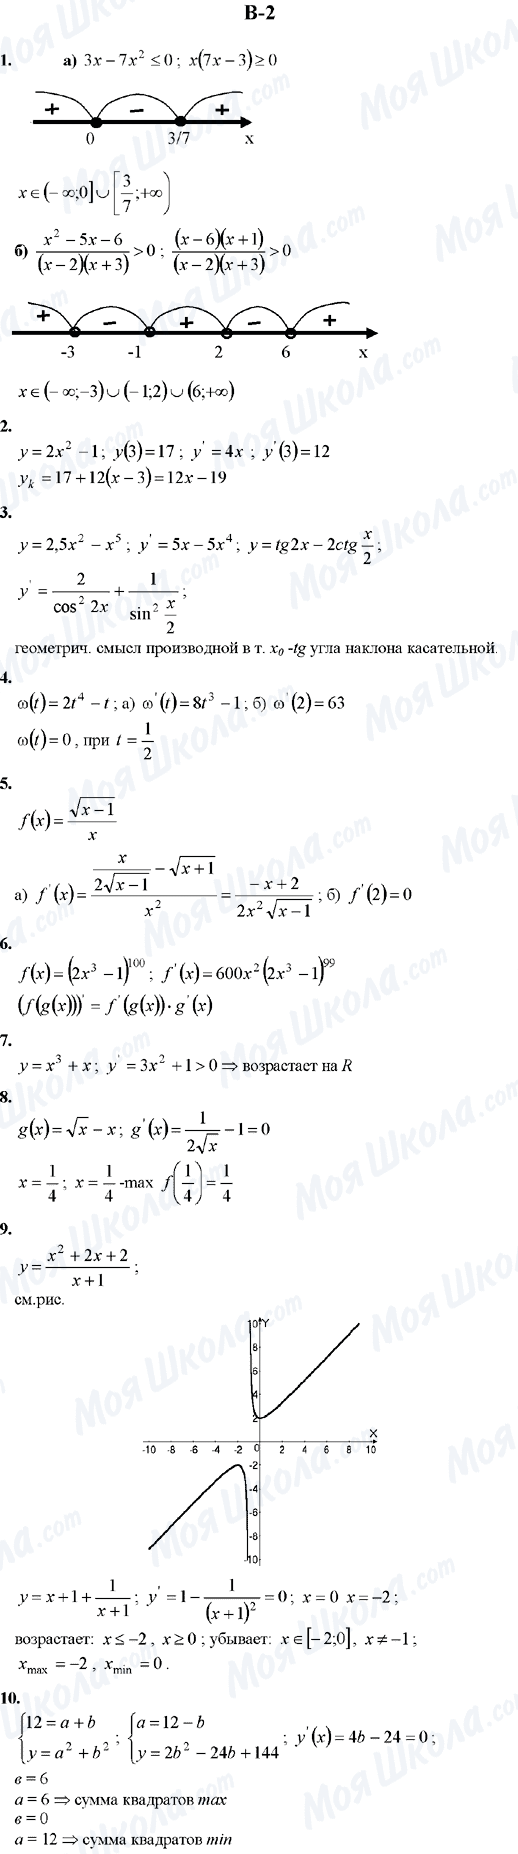 ГДЗ Алгебра 10 клас сторінка B-2